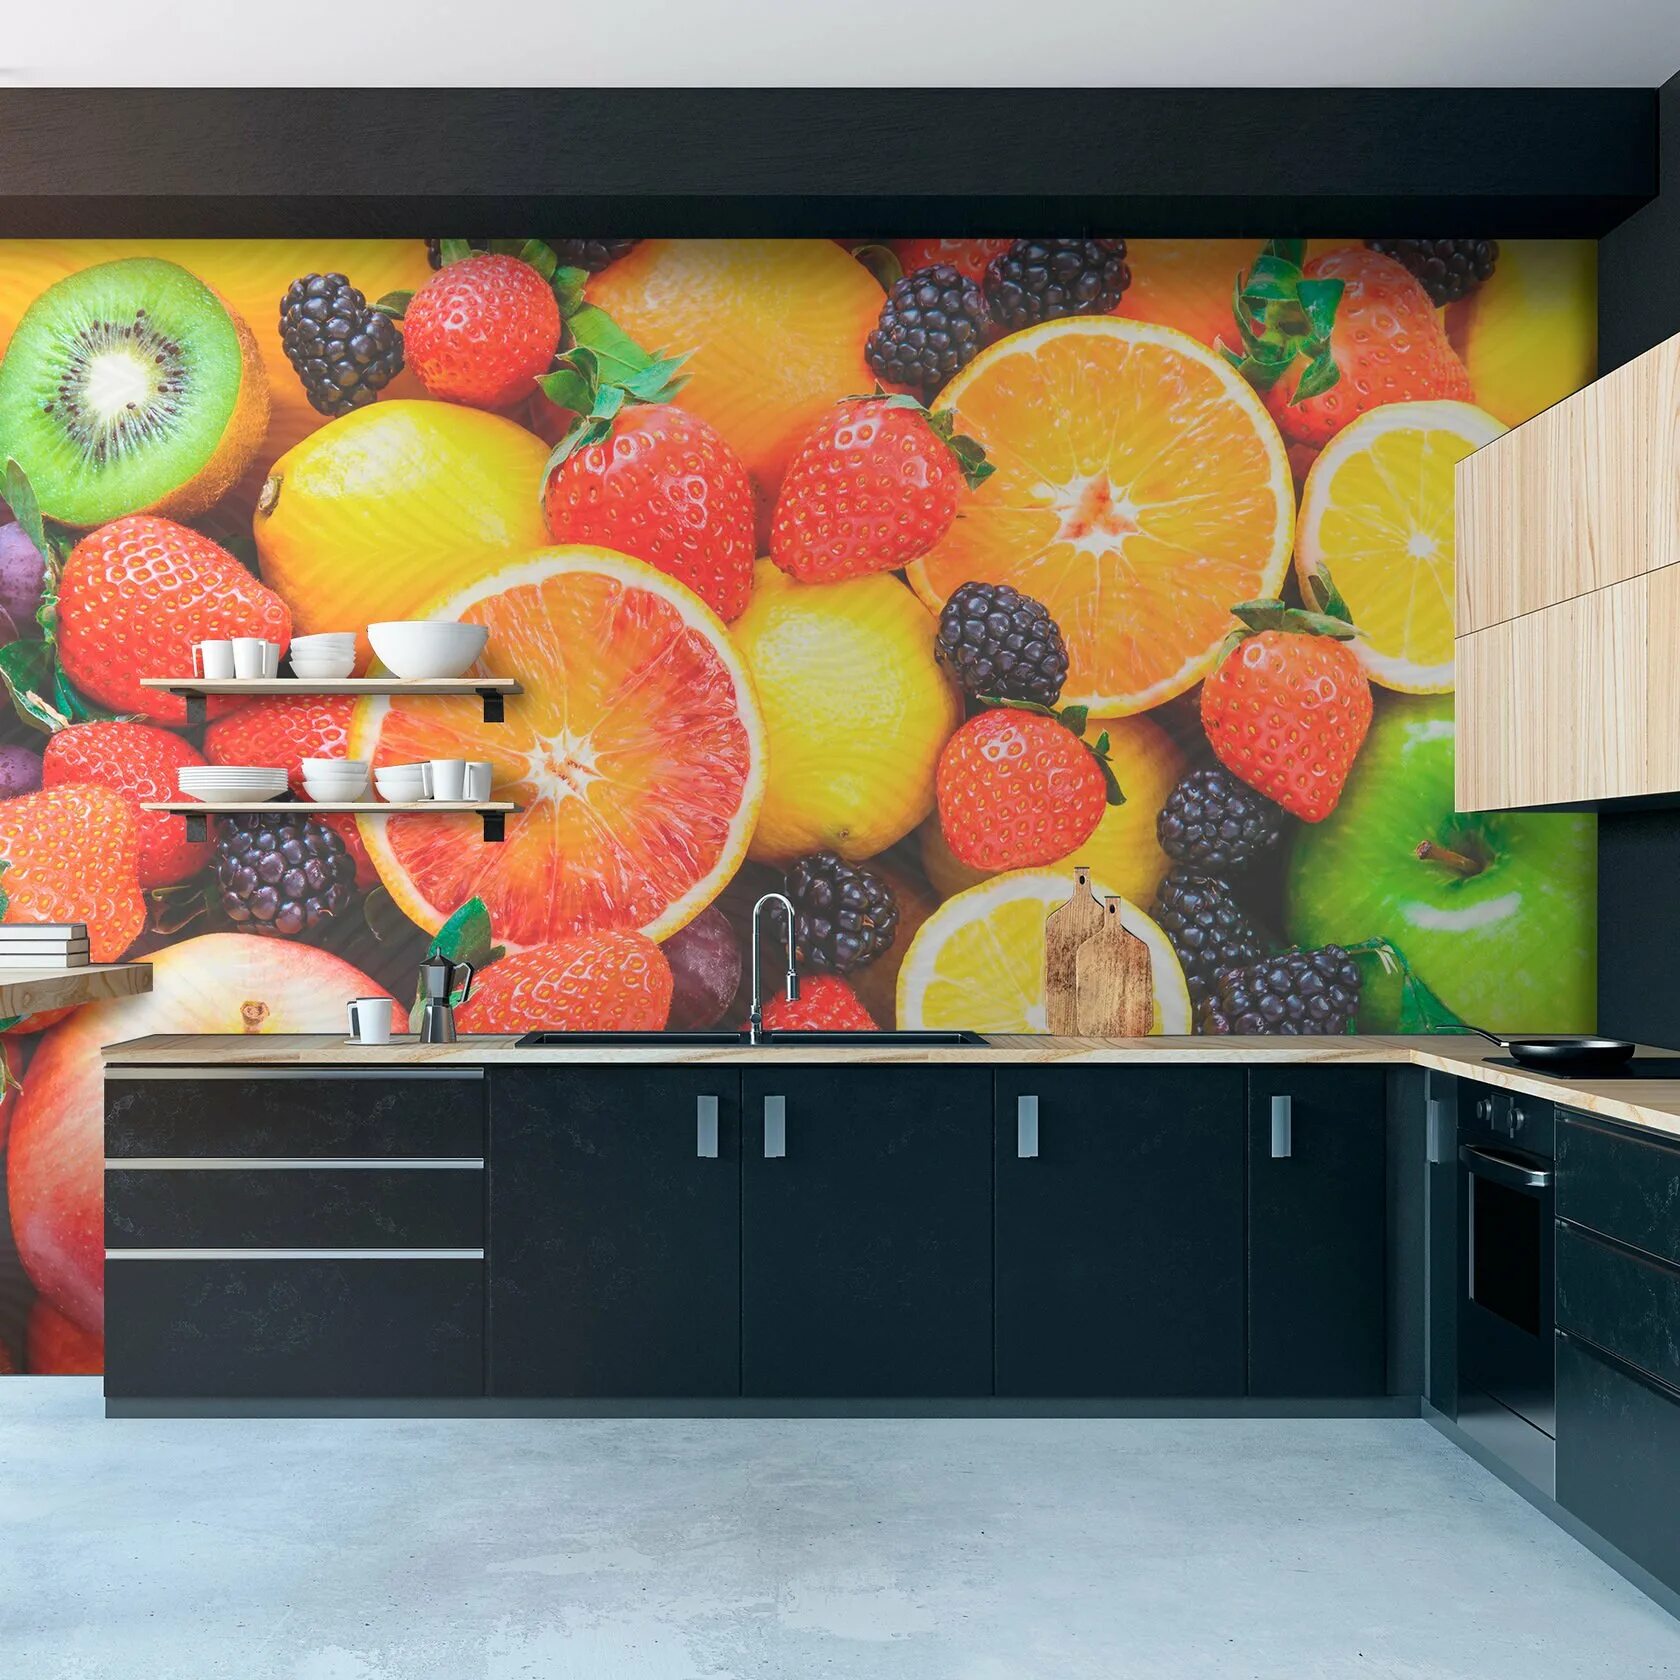 Фруктовая кухня. Фрукты на кухне. Фотообои для кухни. Плитка с фруктами на кухню. Фотообои фрукты на кухню на стену.